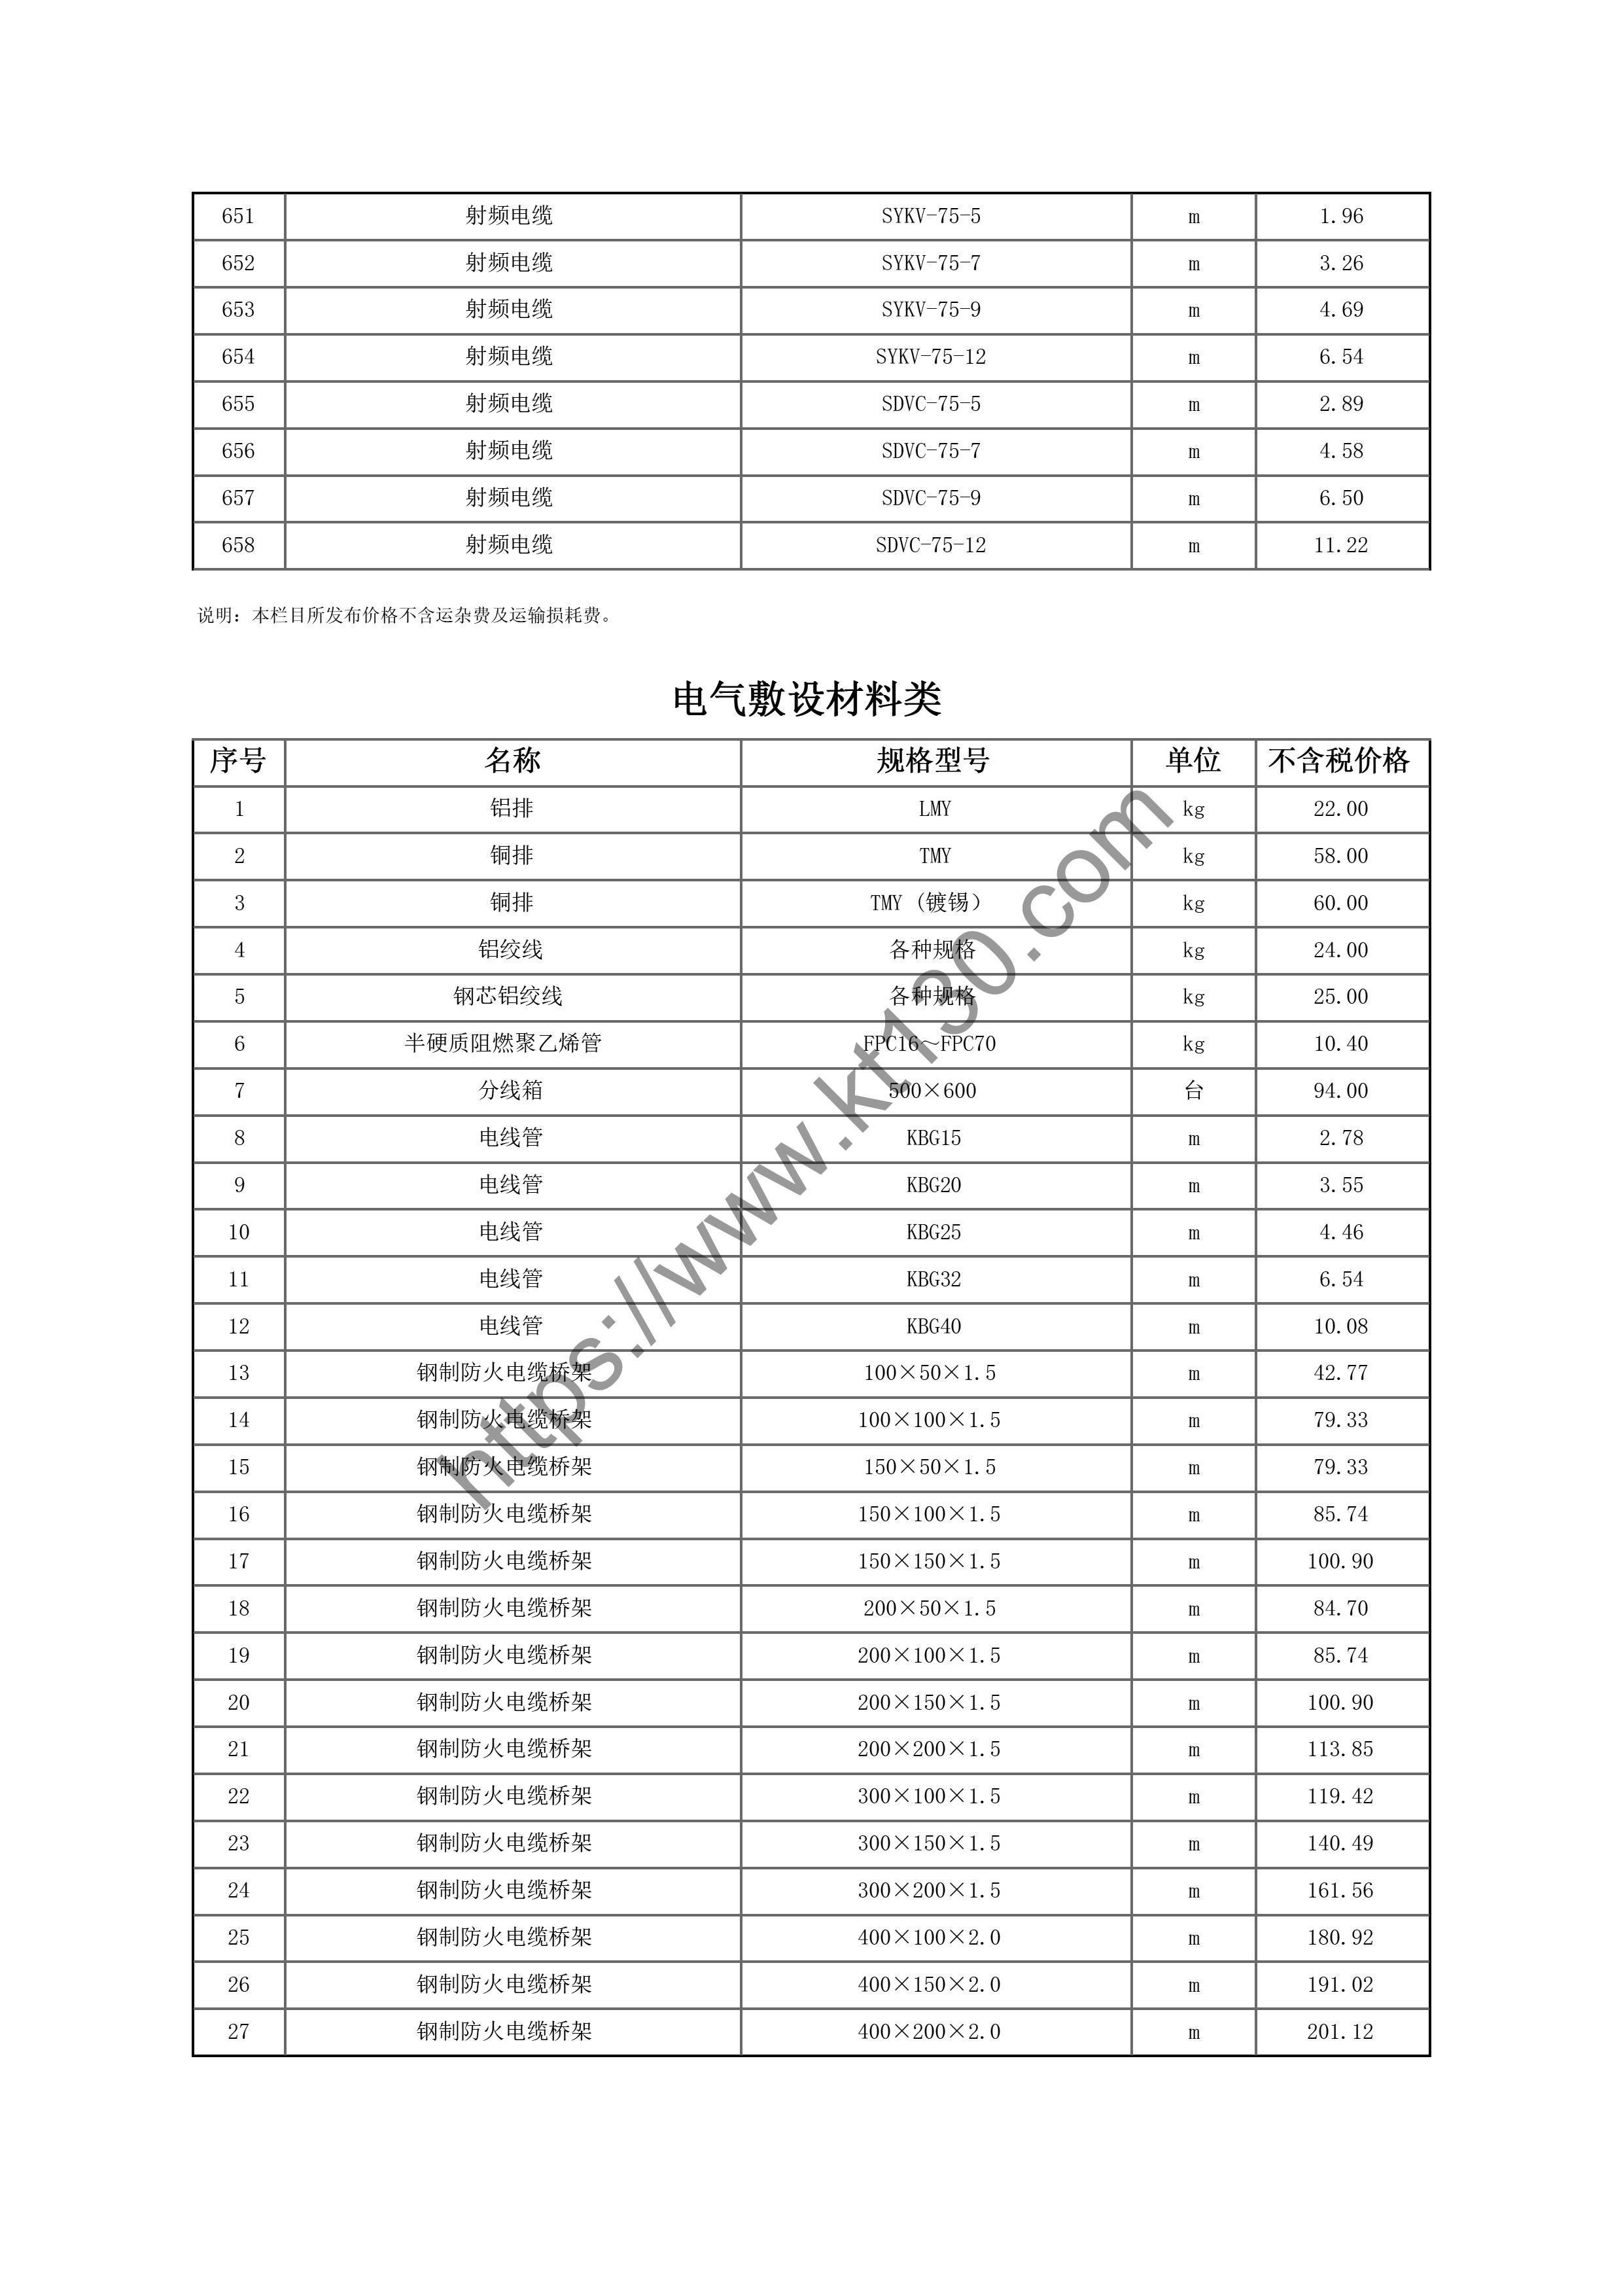 黑龙江哈尔滨市2022年7月份电线电缆刊载价